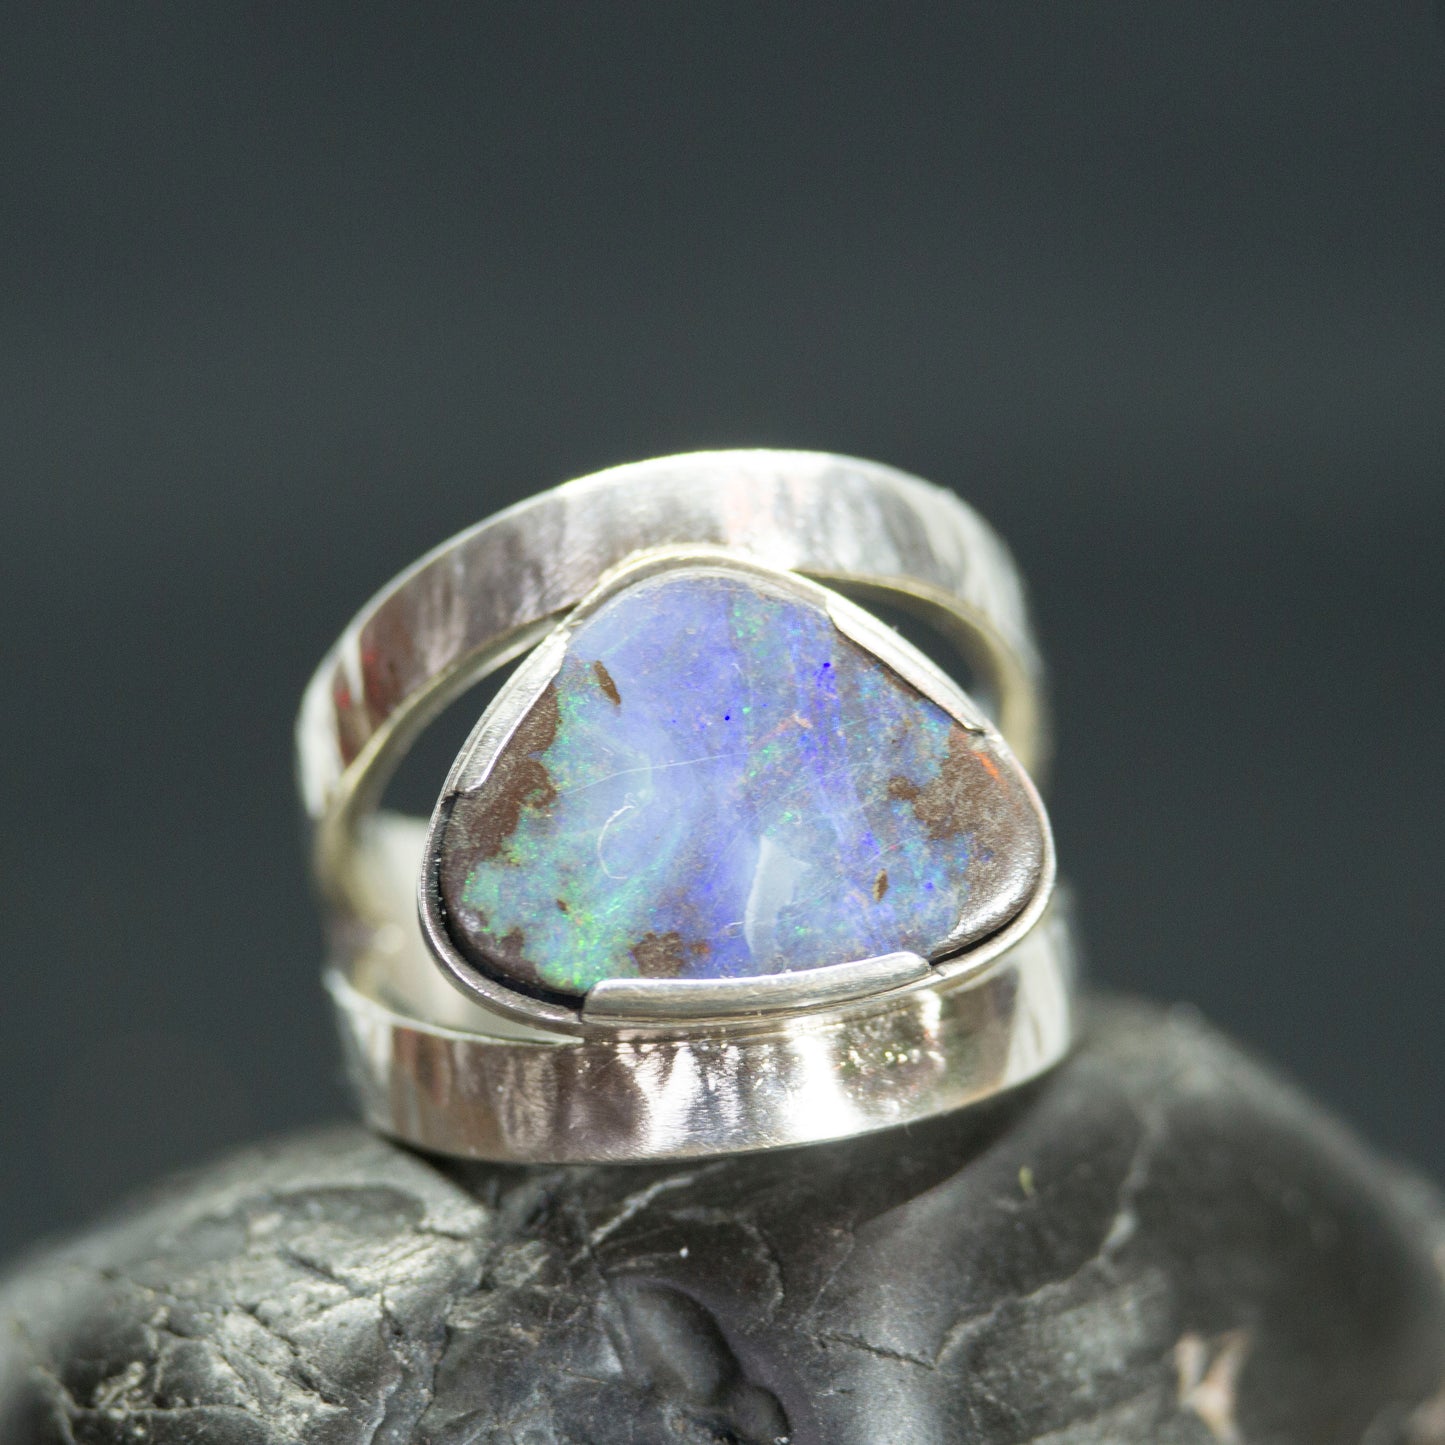 Australian Boulder Opal in a Sterling Silver Ring